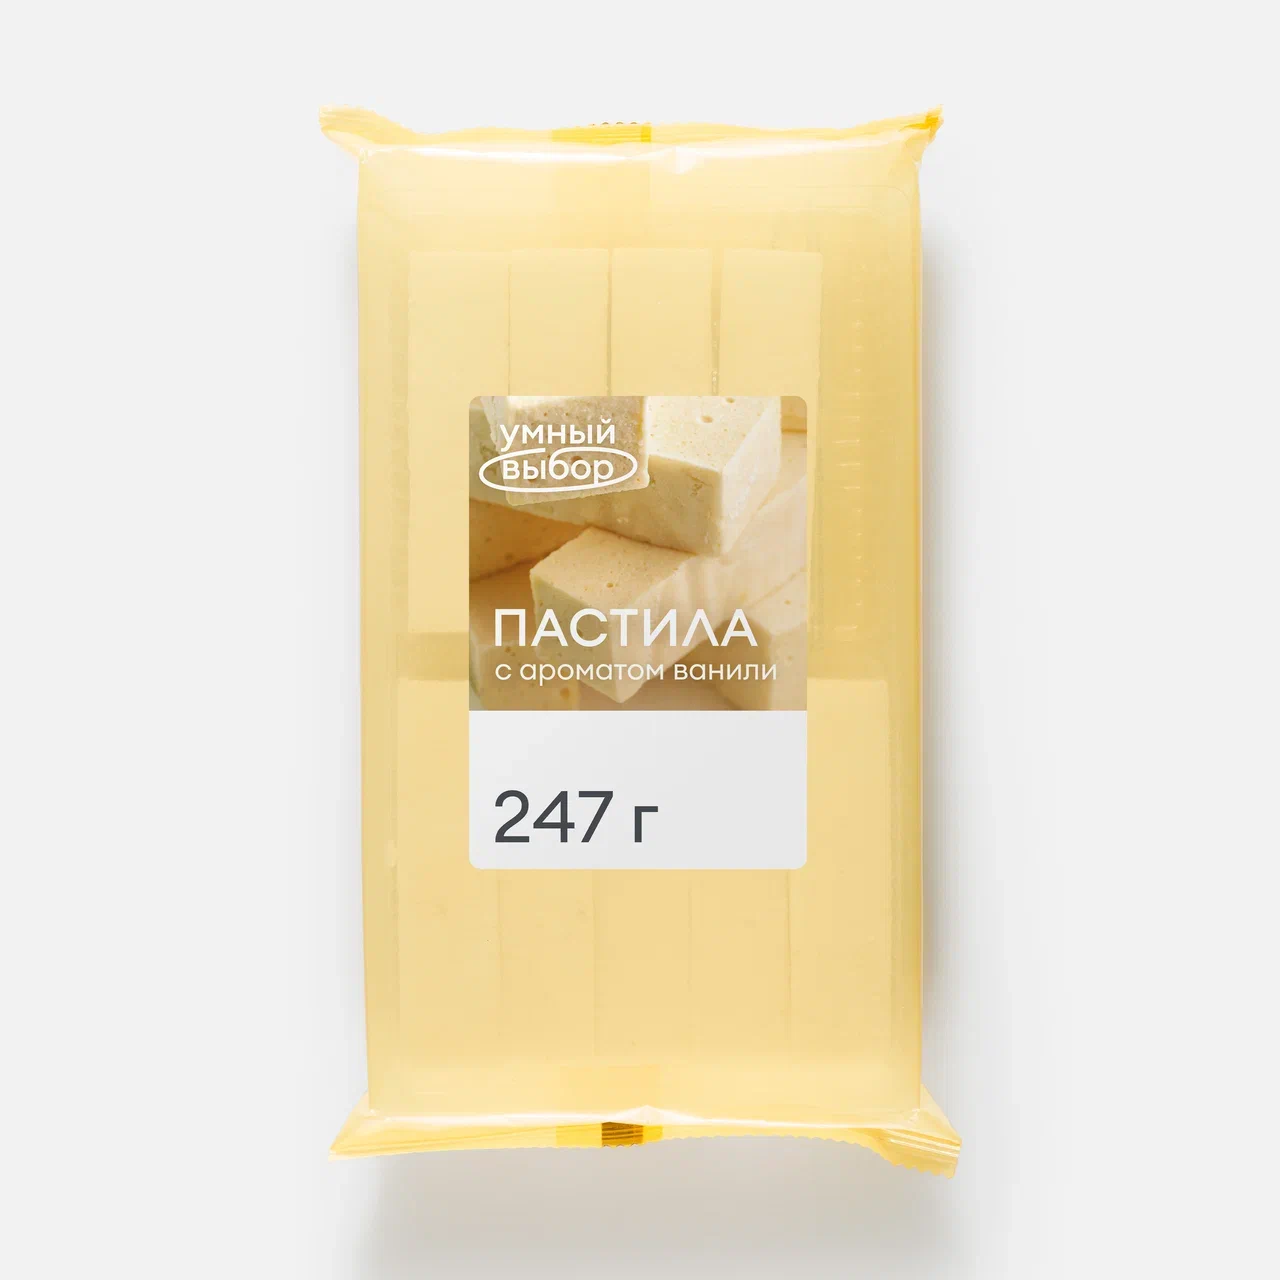 Пастила Умный выбор с ароматом ванили, 247 г - купить в Мегамаркет Москва Пушкино, цена на Мегамаркет